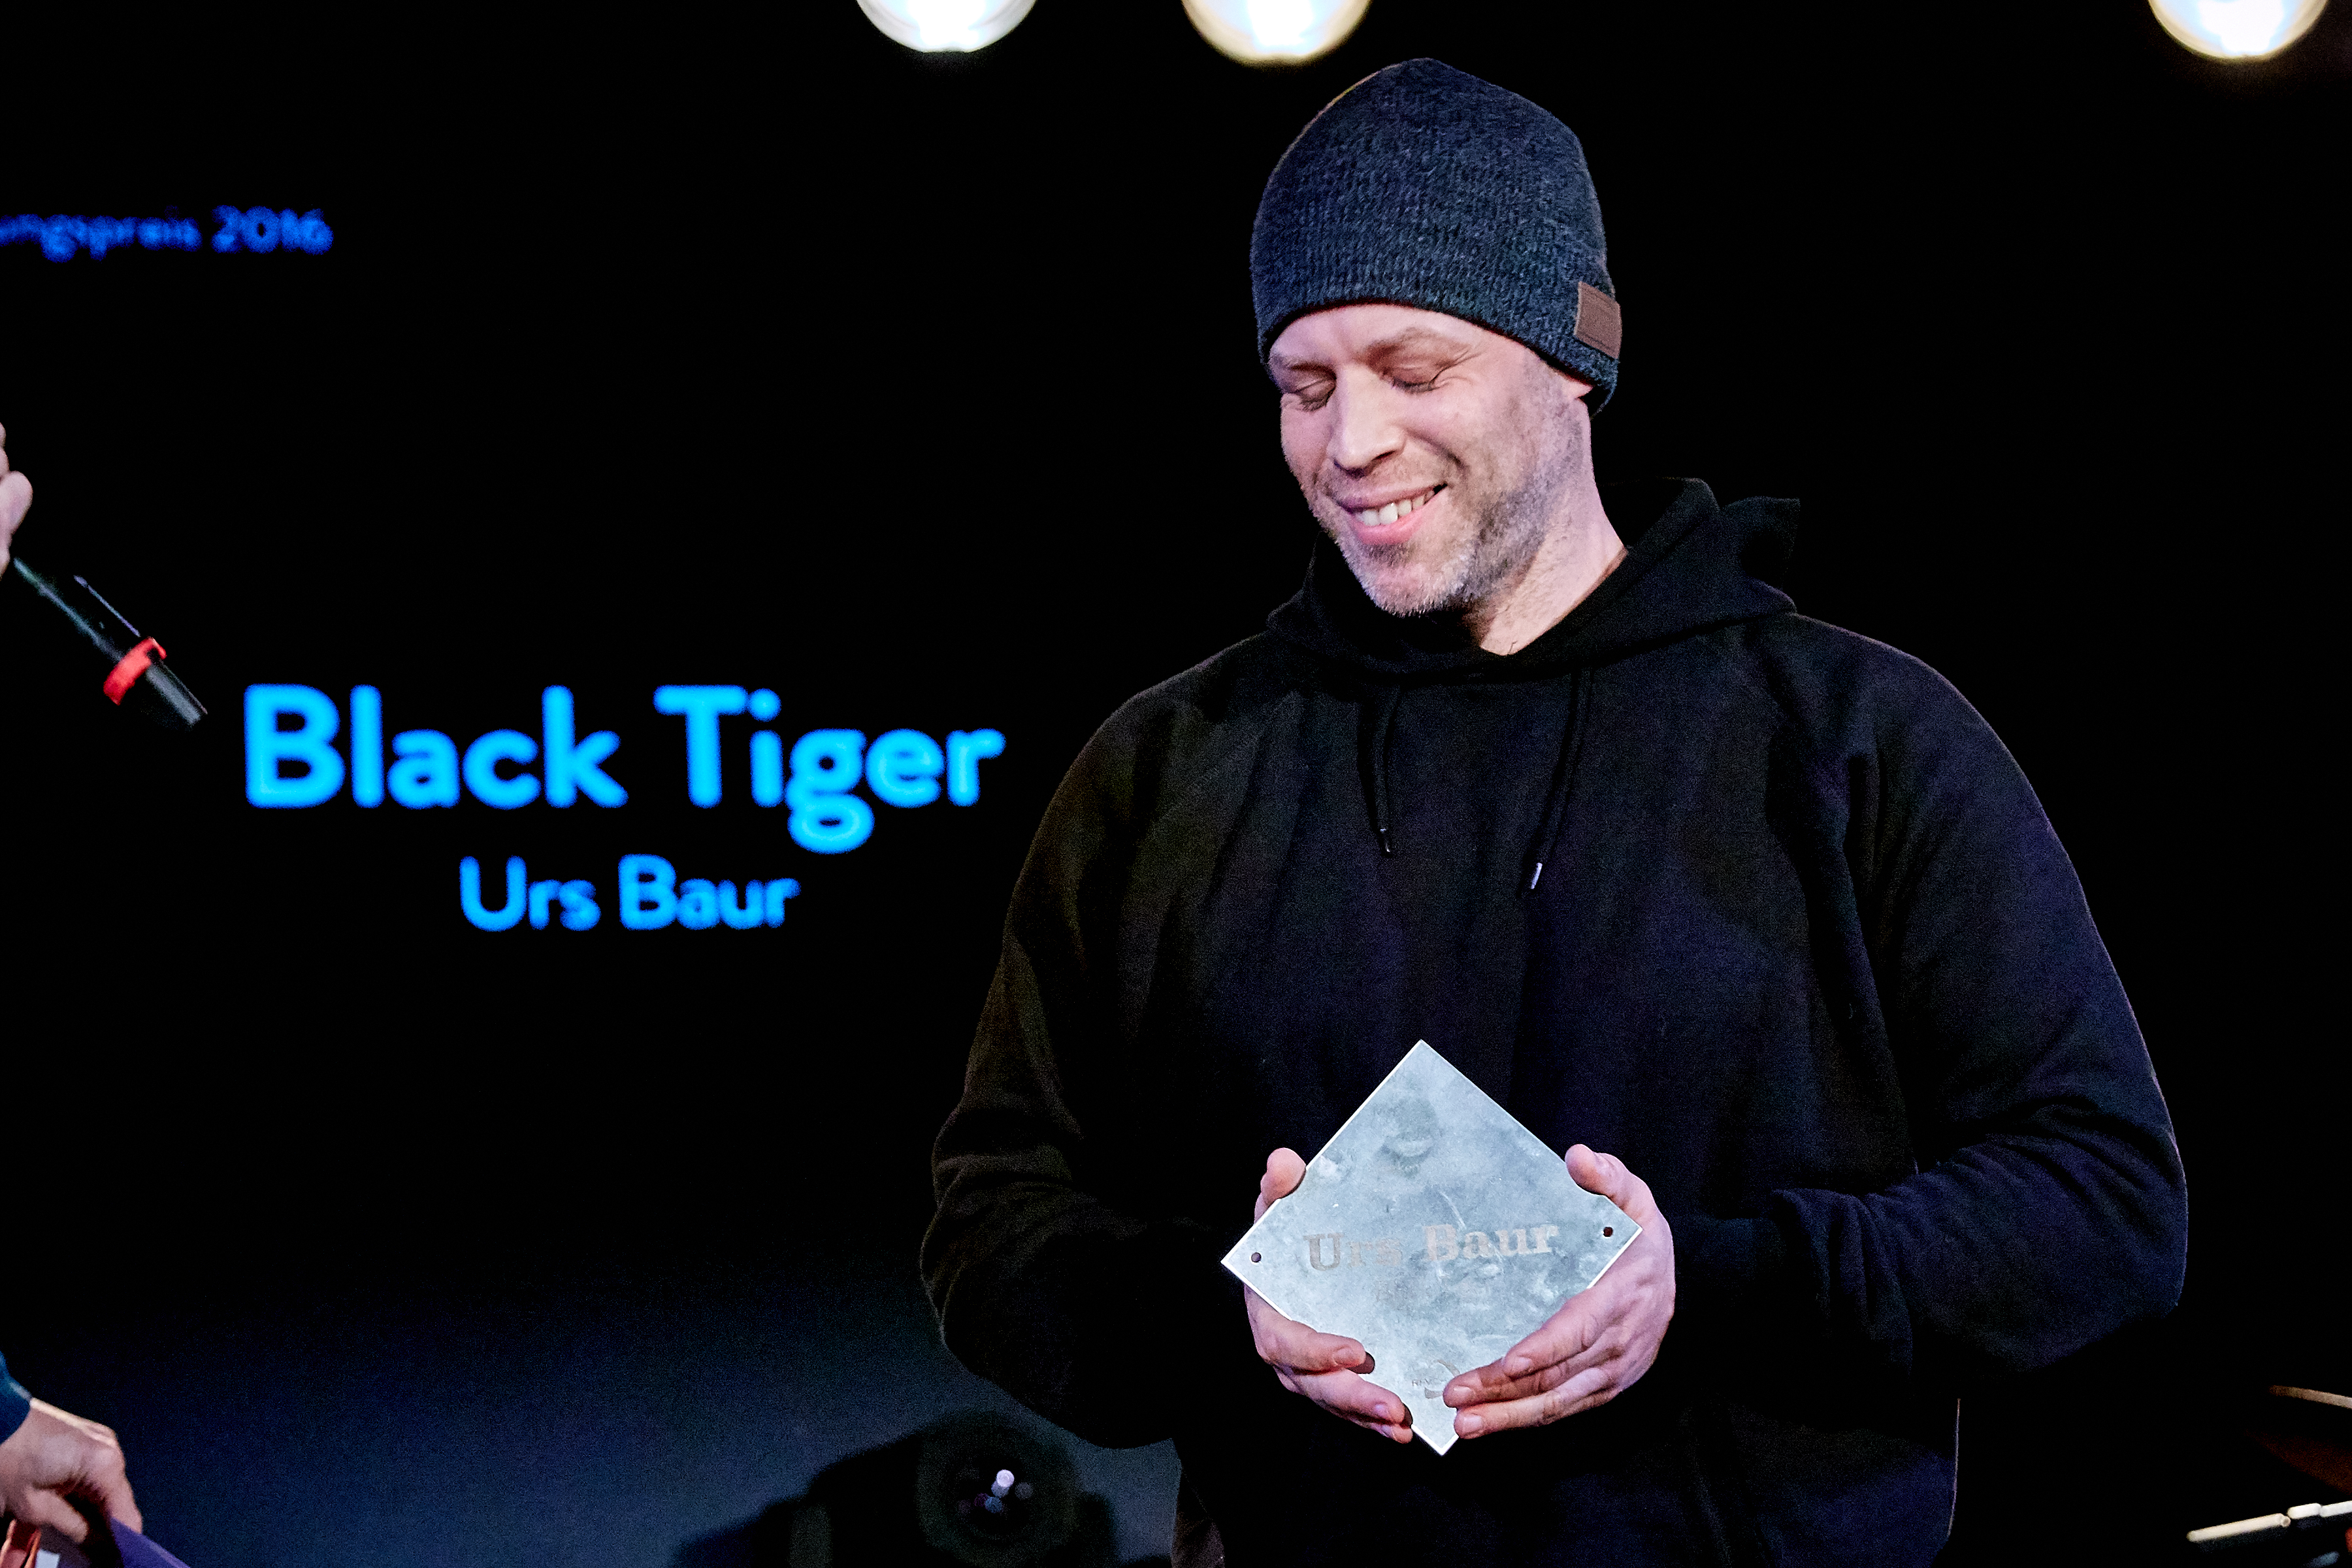 Anerkennungspreis für sein langjähriges Schaffen: Black Tiger.